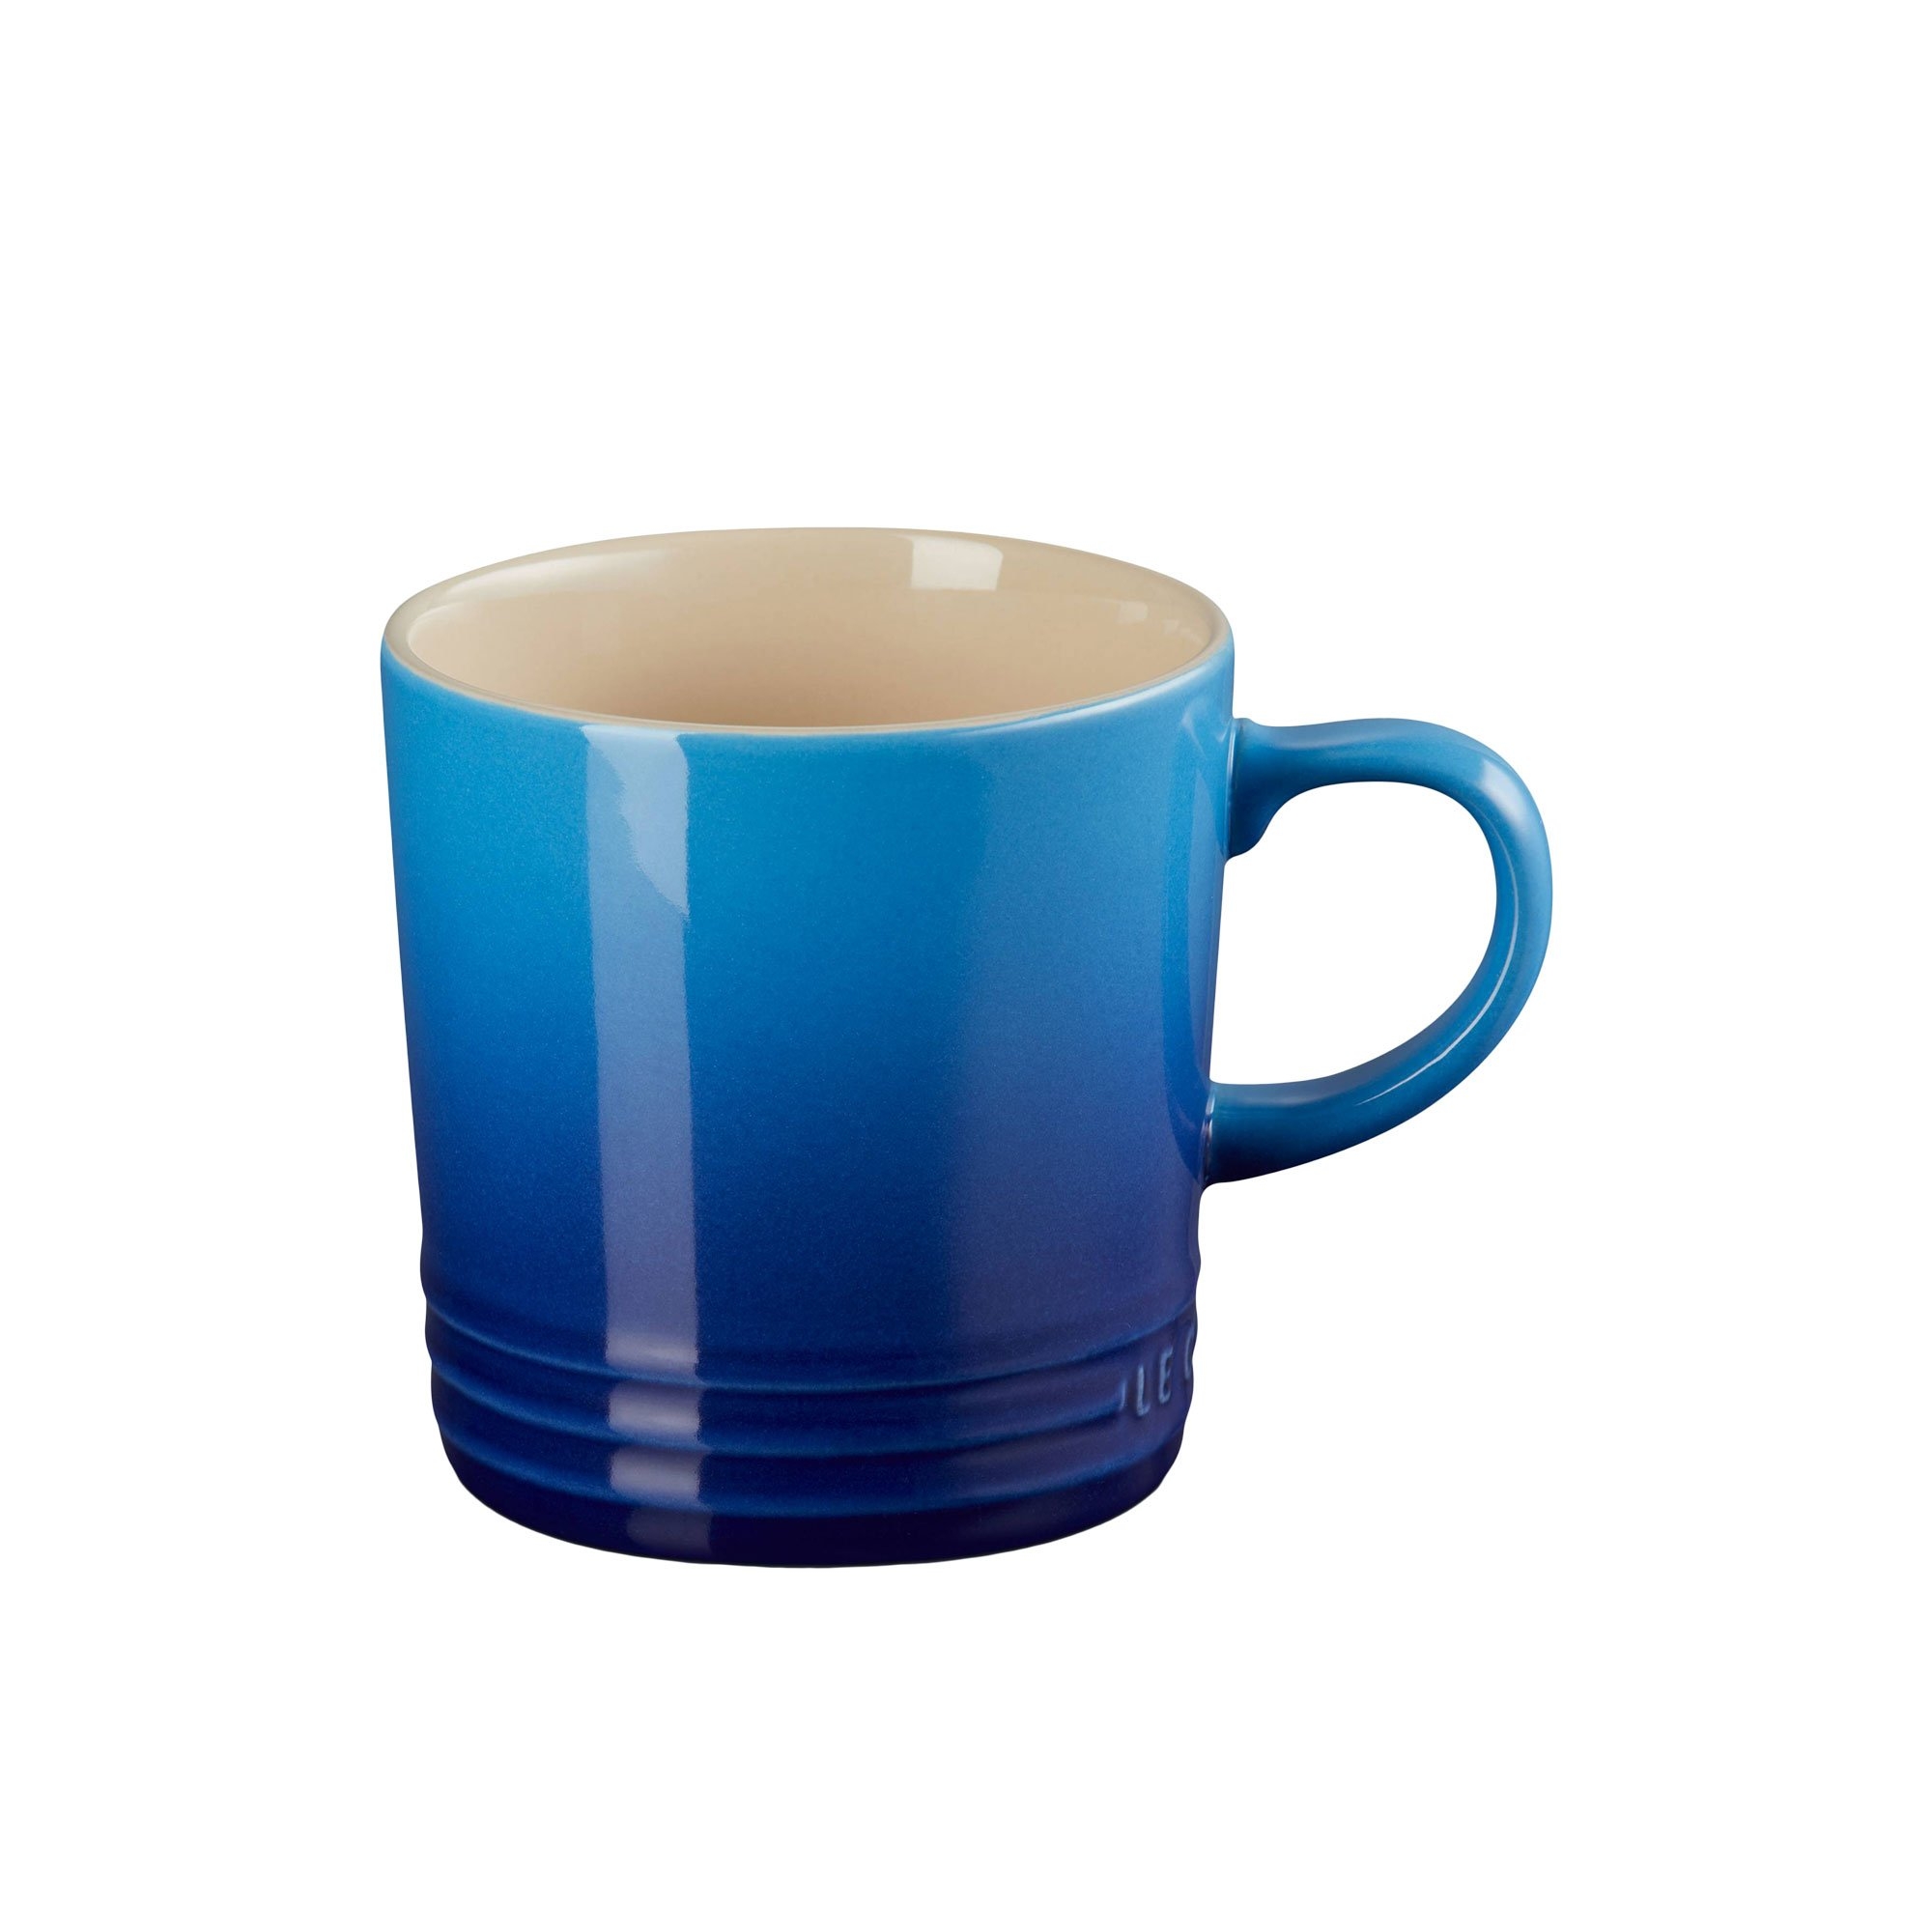 Le Creuset Stoneware Mug 350ml Azure Blue Image 1